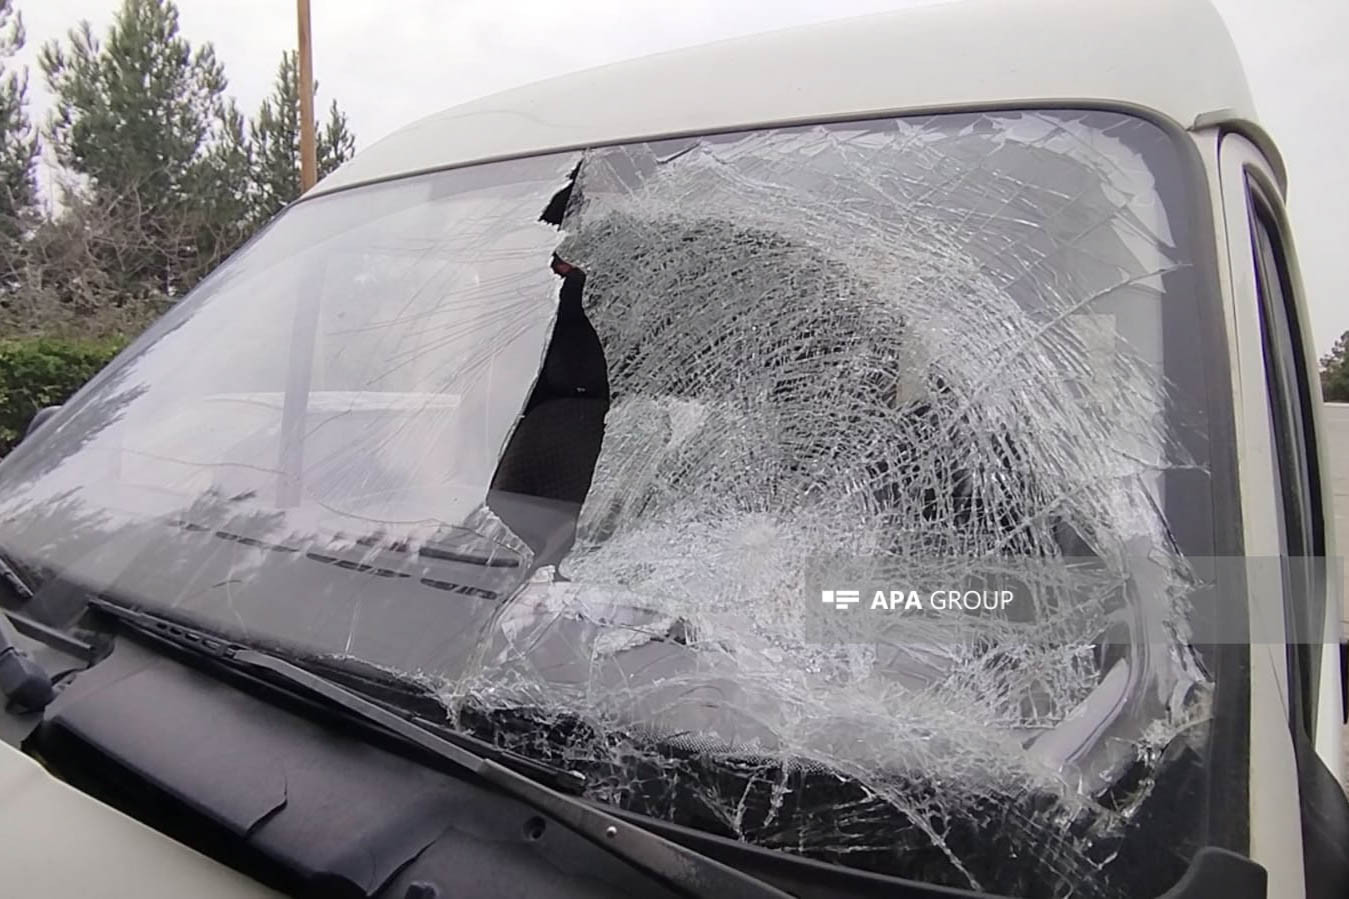 Bərdədə 77 yaşlı piyadanı avtomobil vuraraq öldürüb - FOTO